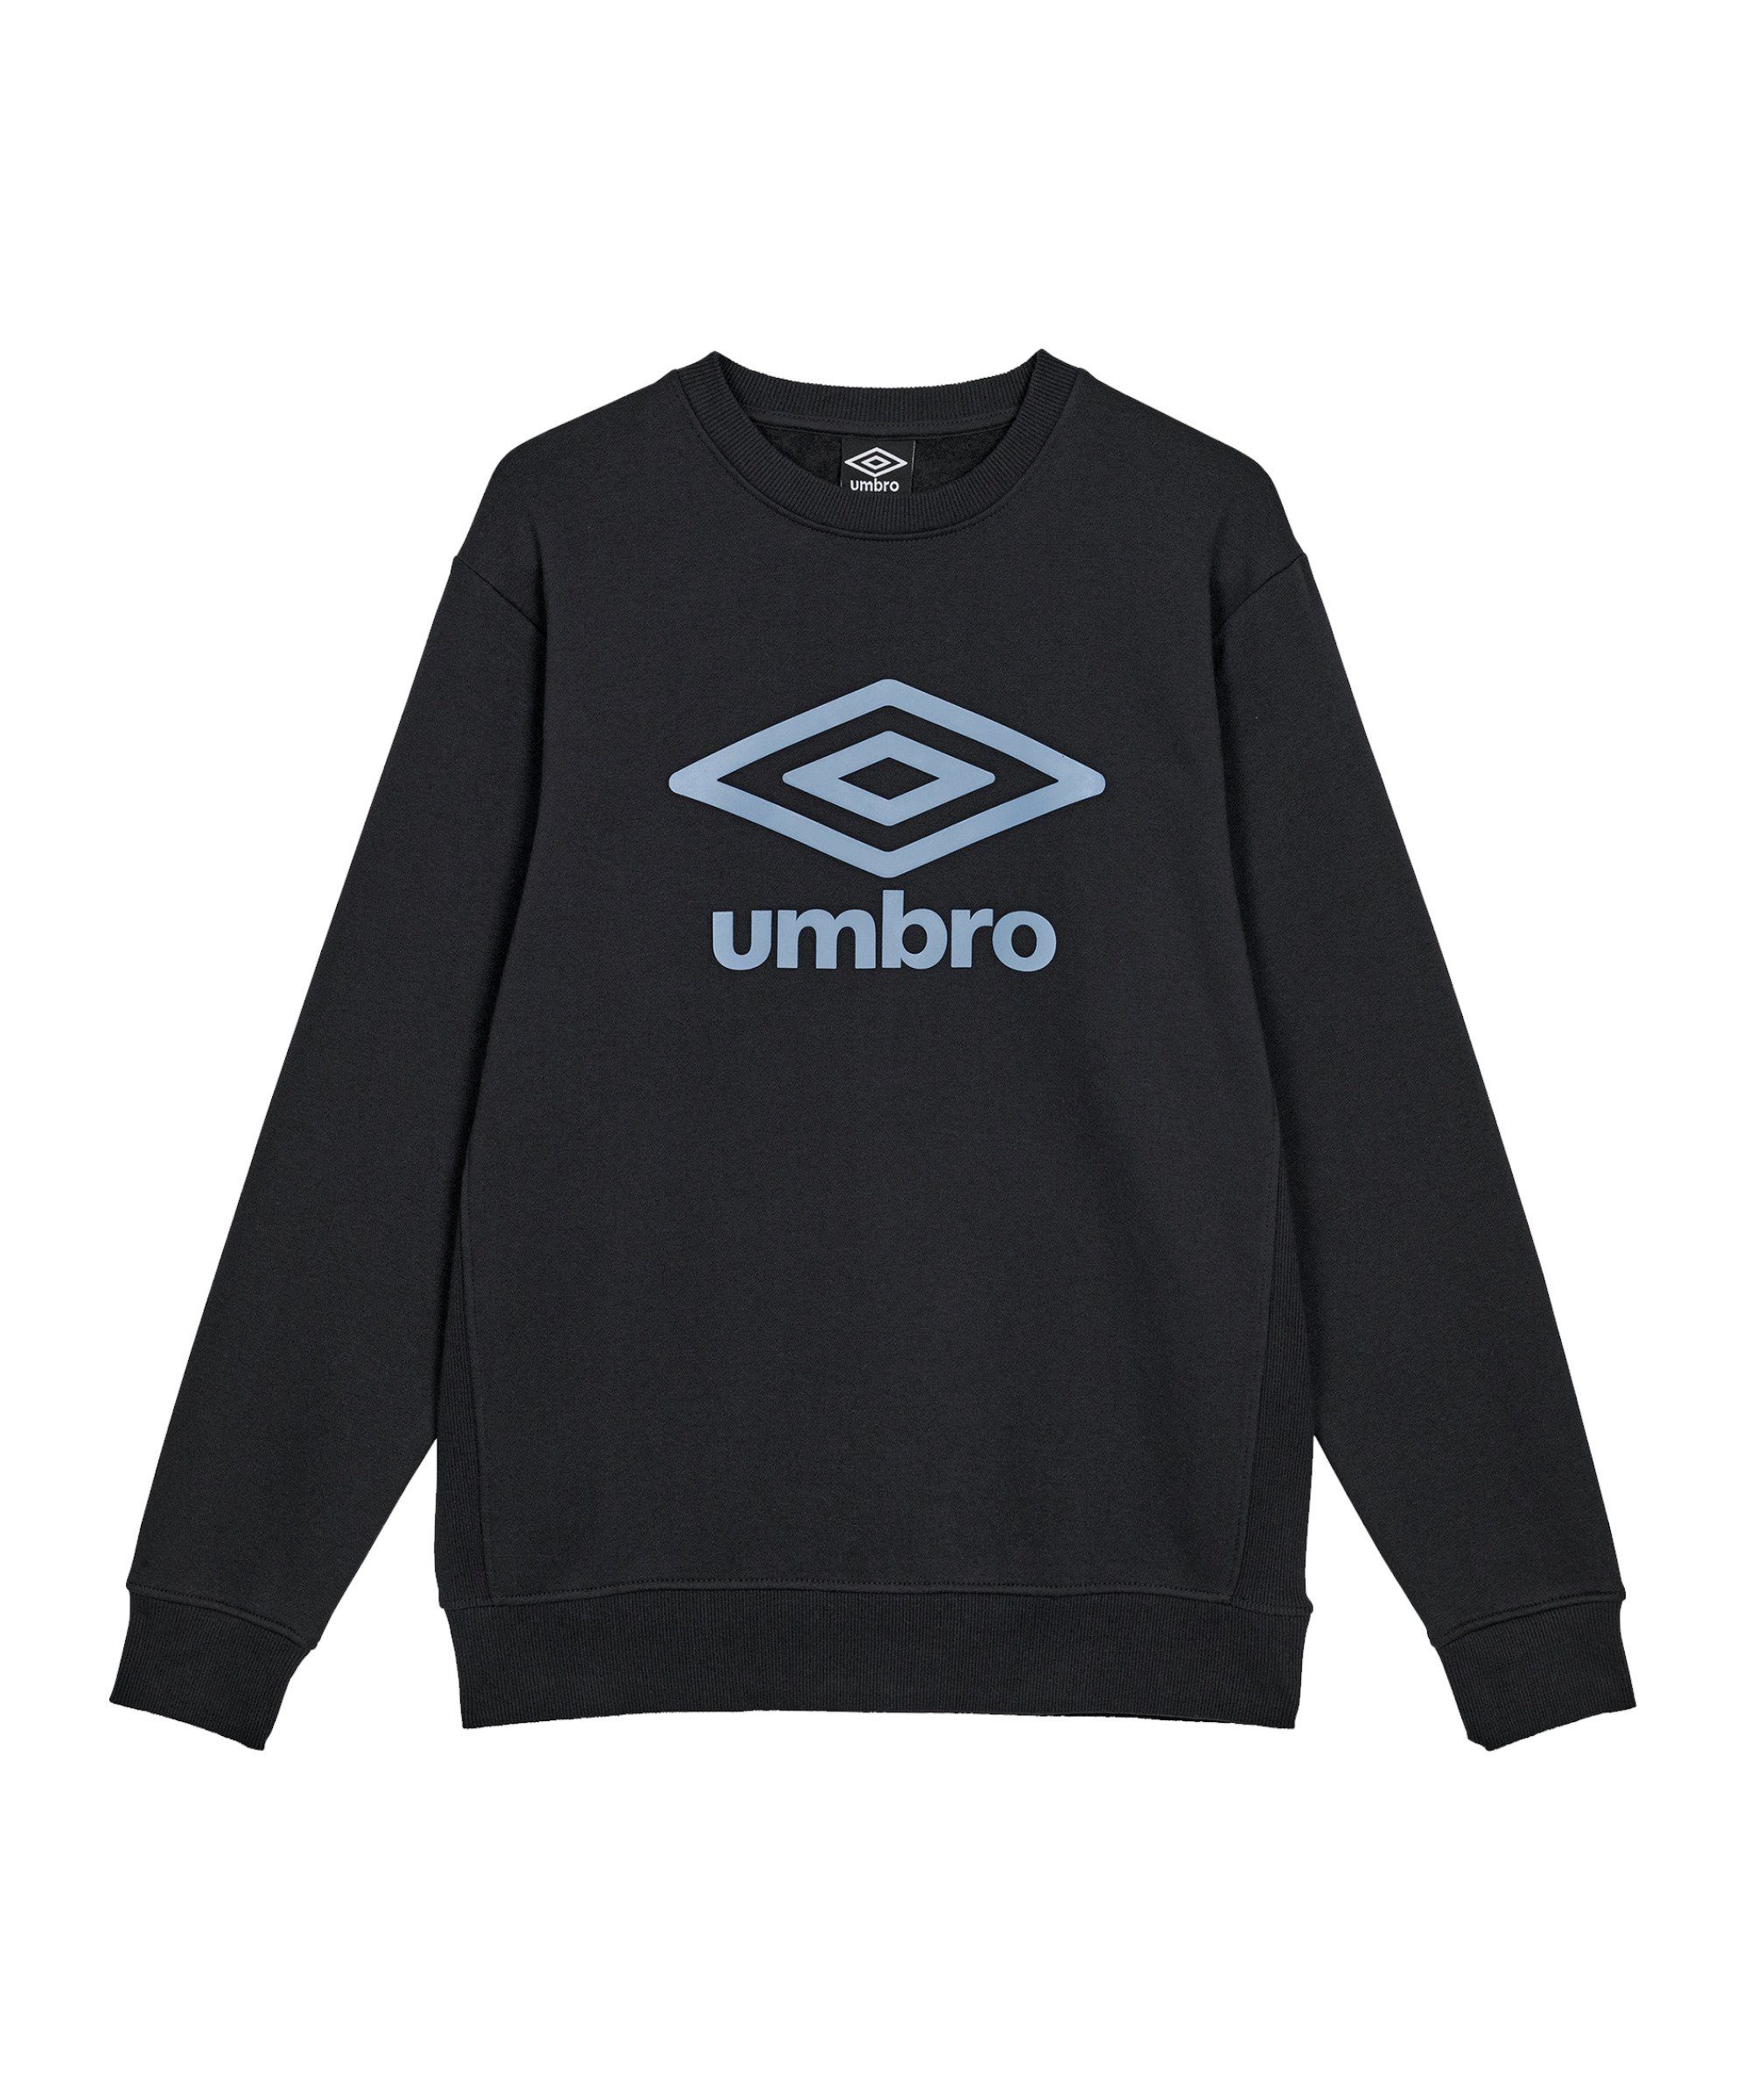 Umbro Sweater Core Sweatshirt